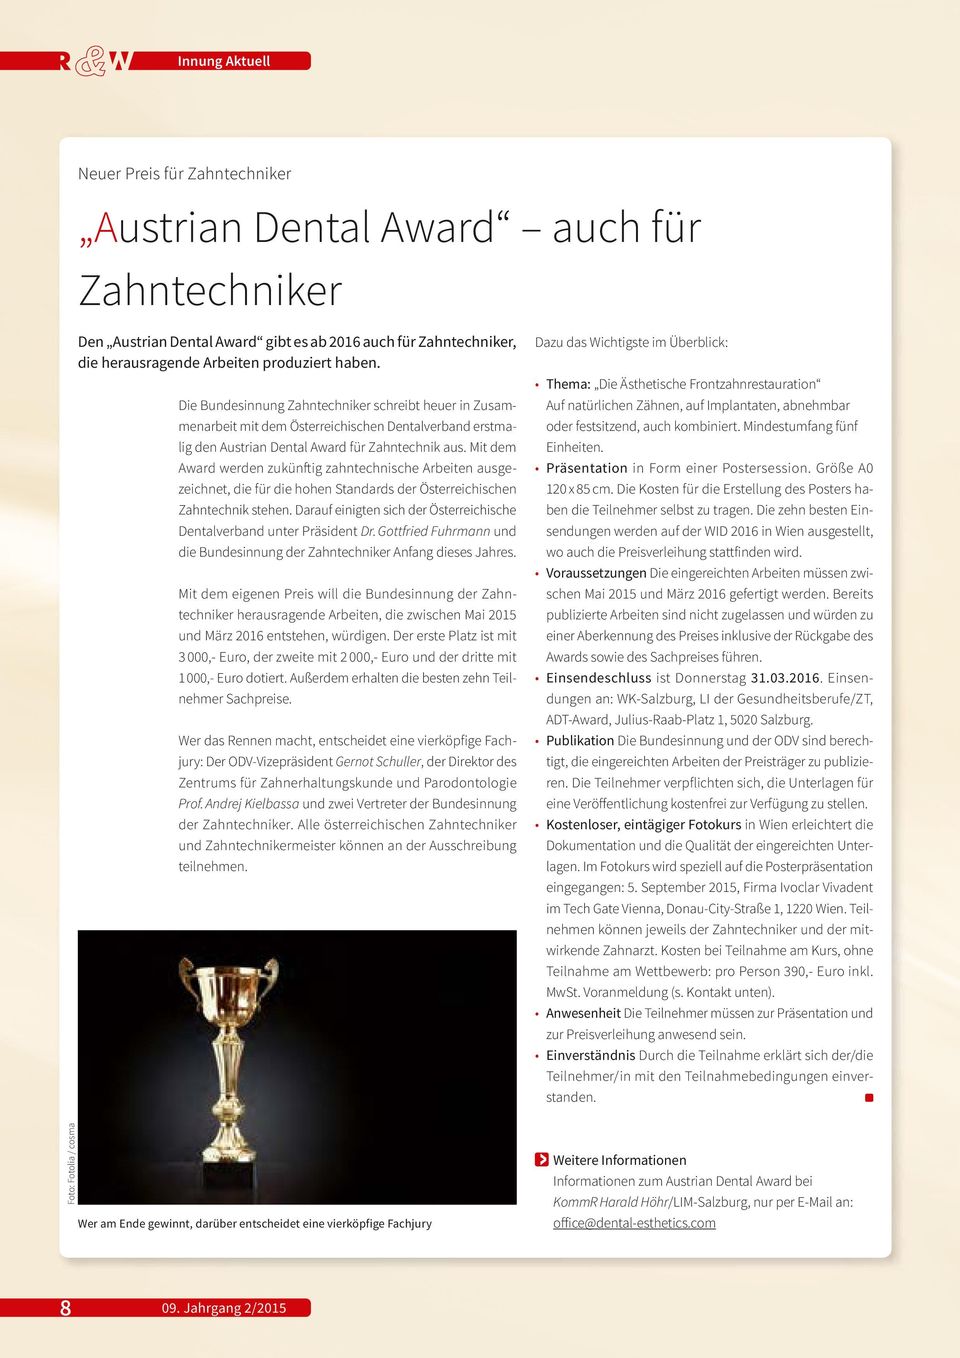 Mit dem Award werden zukünftig zahntechnische Arbeiten ausgezeichnet, die für die hohen Standards der Österreichischen Zahntechnik stehen.